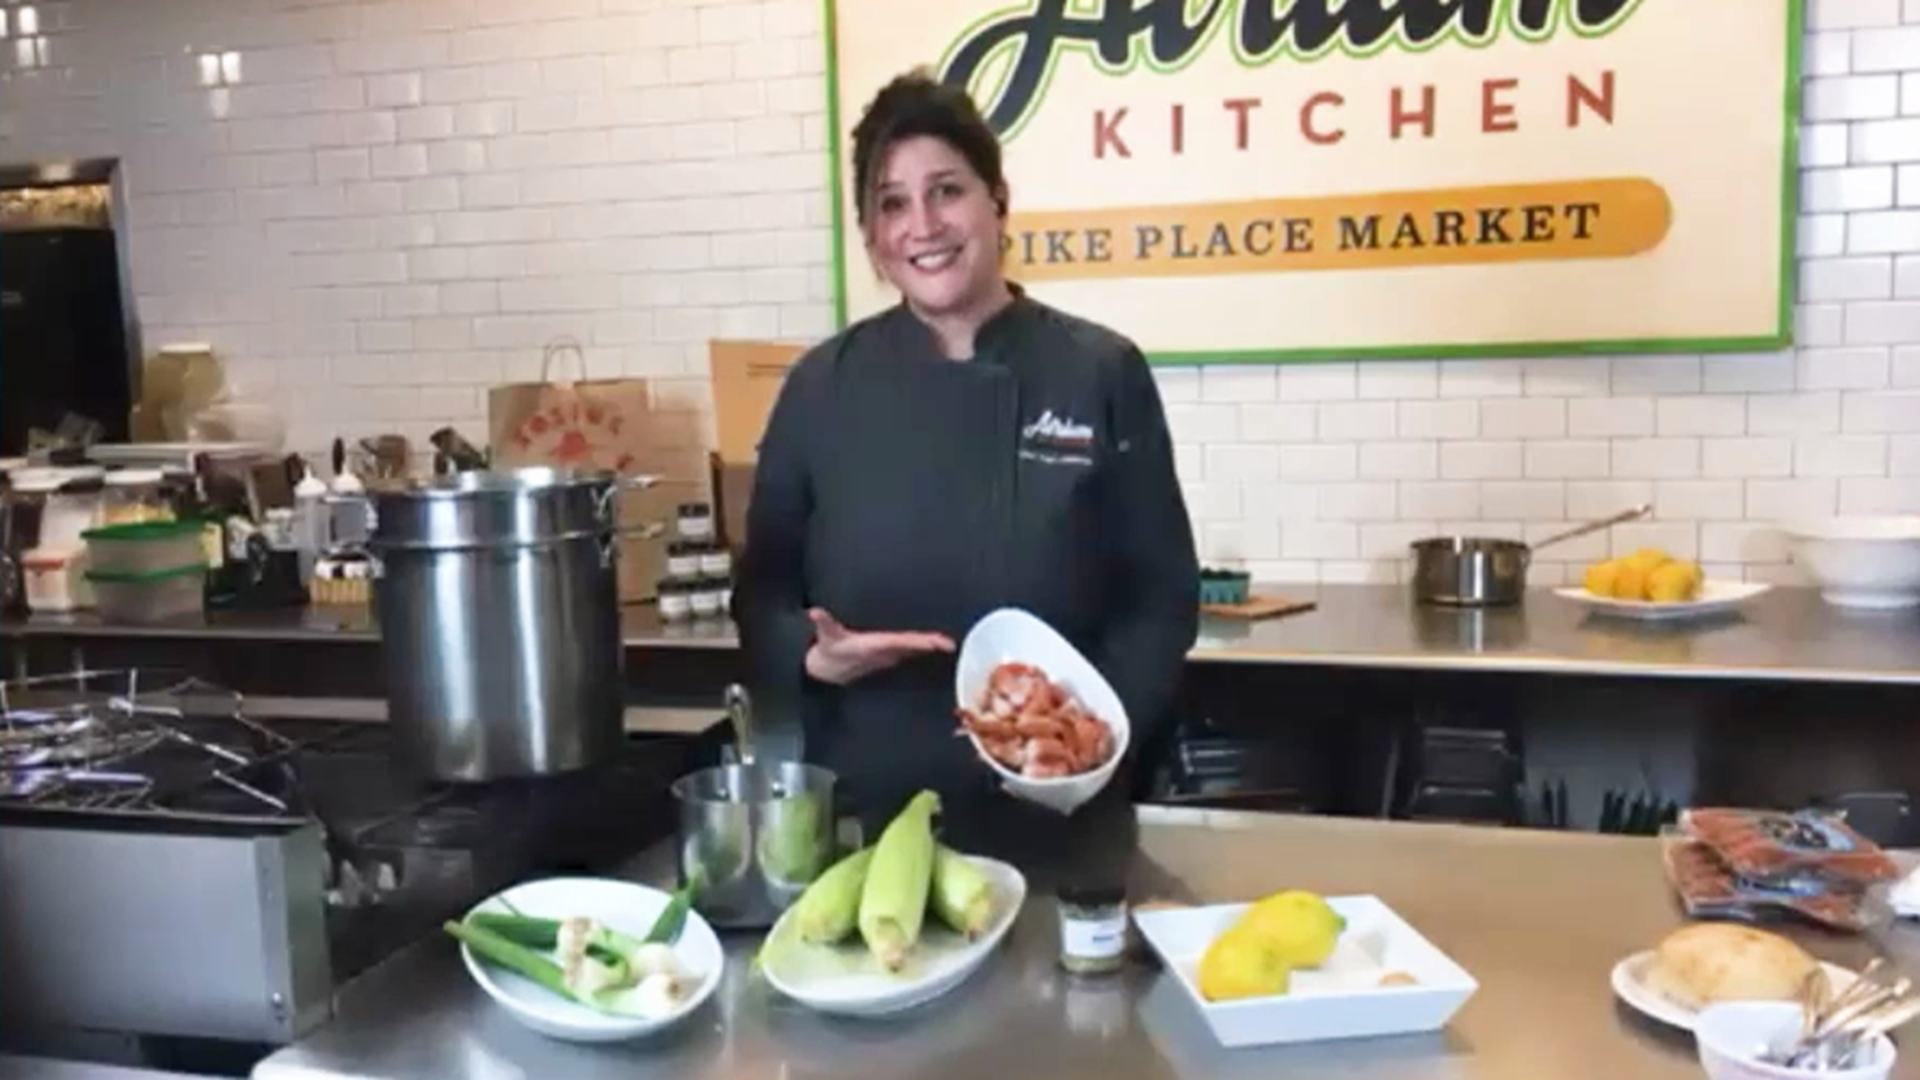 Atrium Kitchen Chef Traci Calderon demonstrates a Spot Prawn Boil with northwest ingredients! 🦐#newdaynw